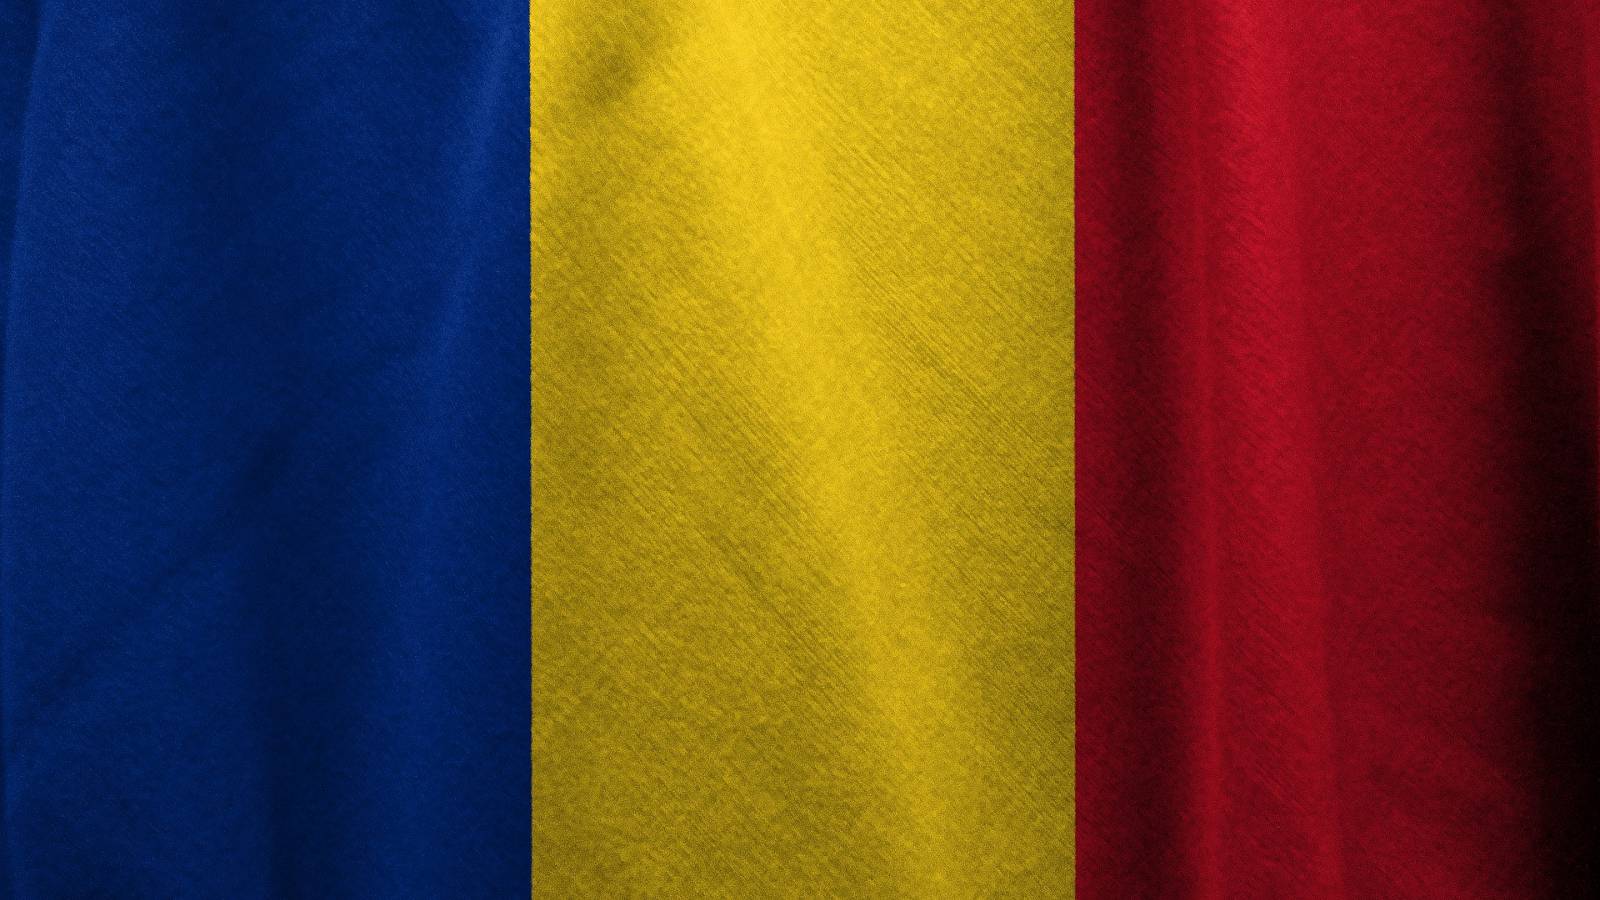 Hoeveel nieuwe gevallen van COVID-19 zijn de afgelopen zeven dagen in Roemenië afgenomen